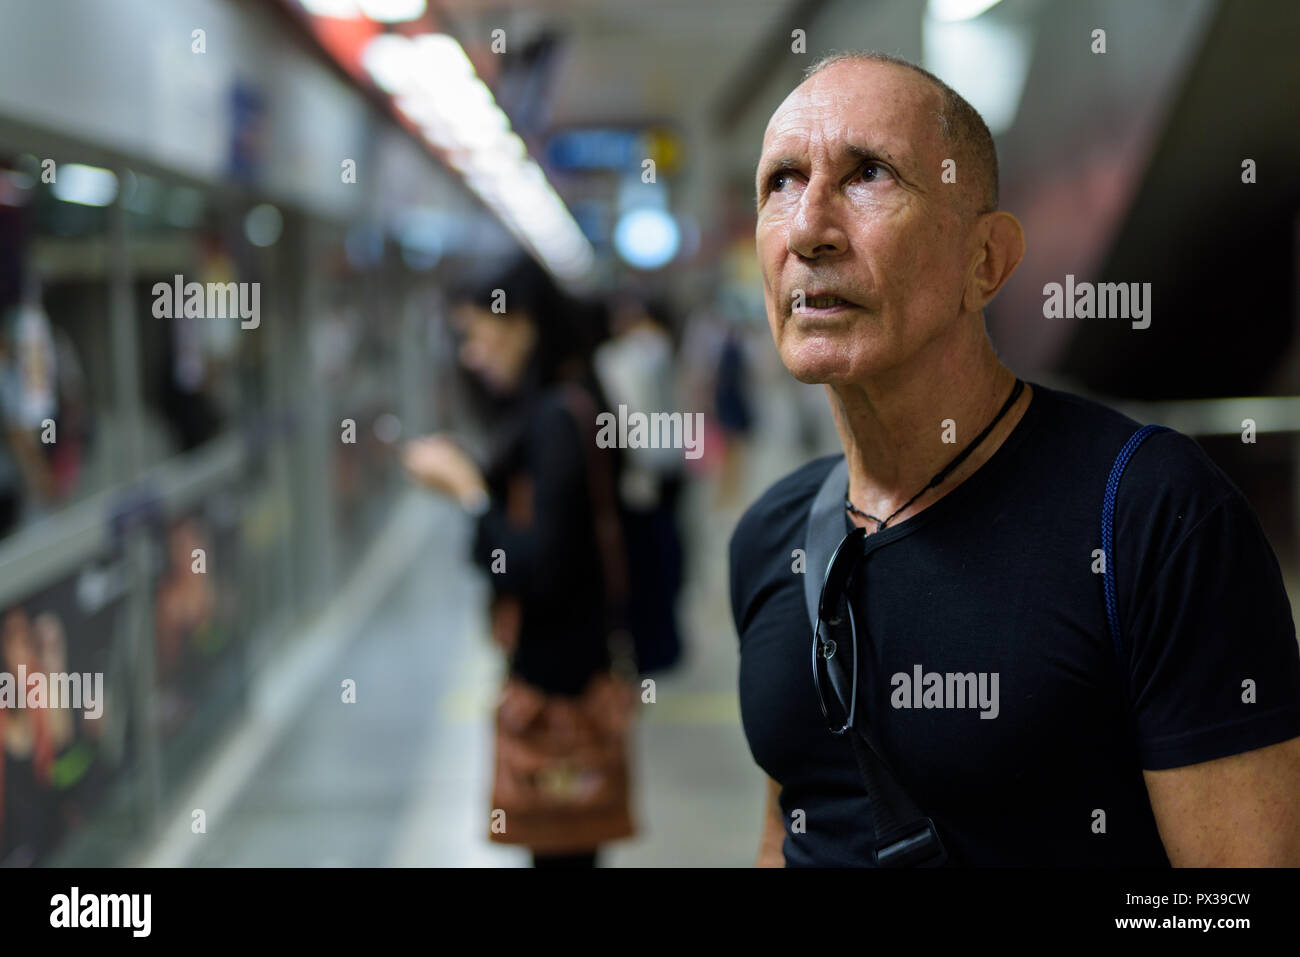 Bald senior tourist man thinking while waiting inside the underg Stock Photo